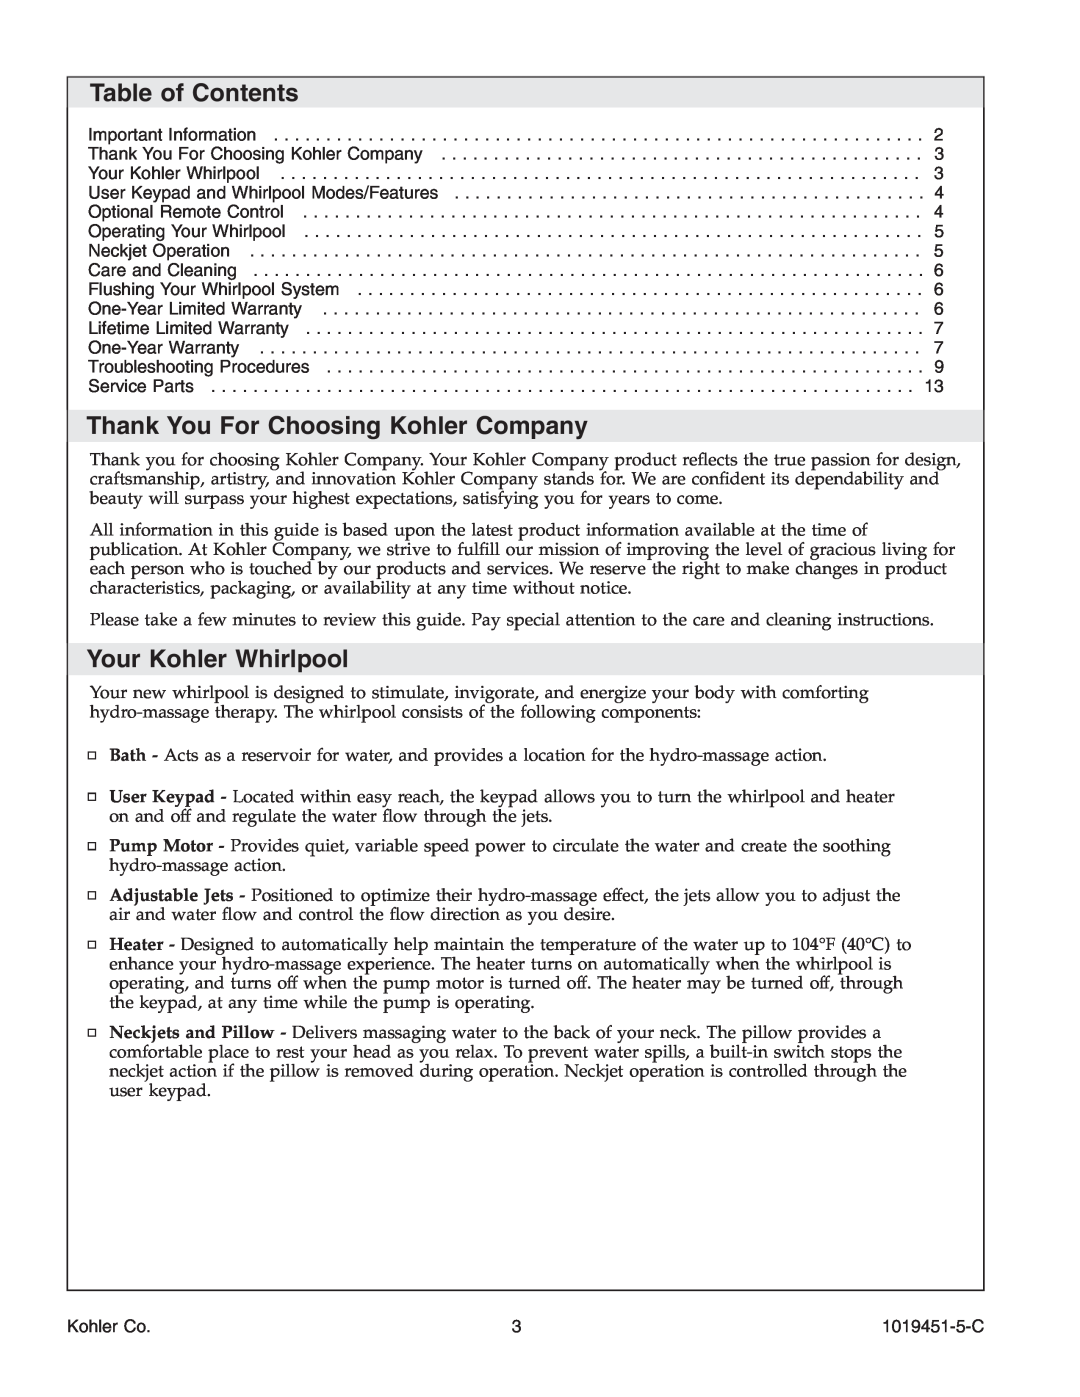 Kohler K-865 manual Table of Contents, Thank You For Choosing Kohler Company, Your Kohler Whirlpool 